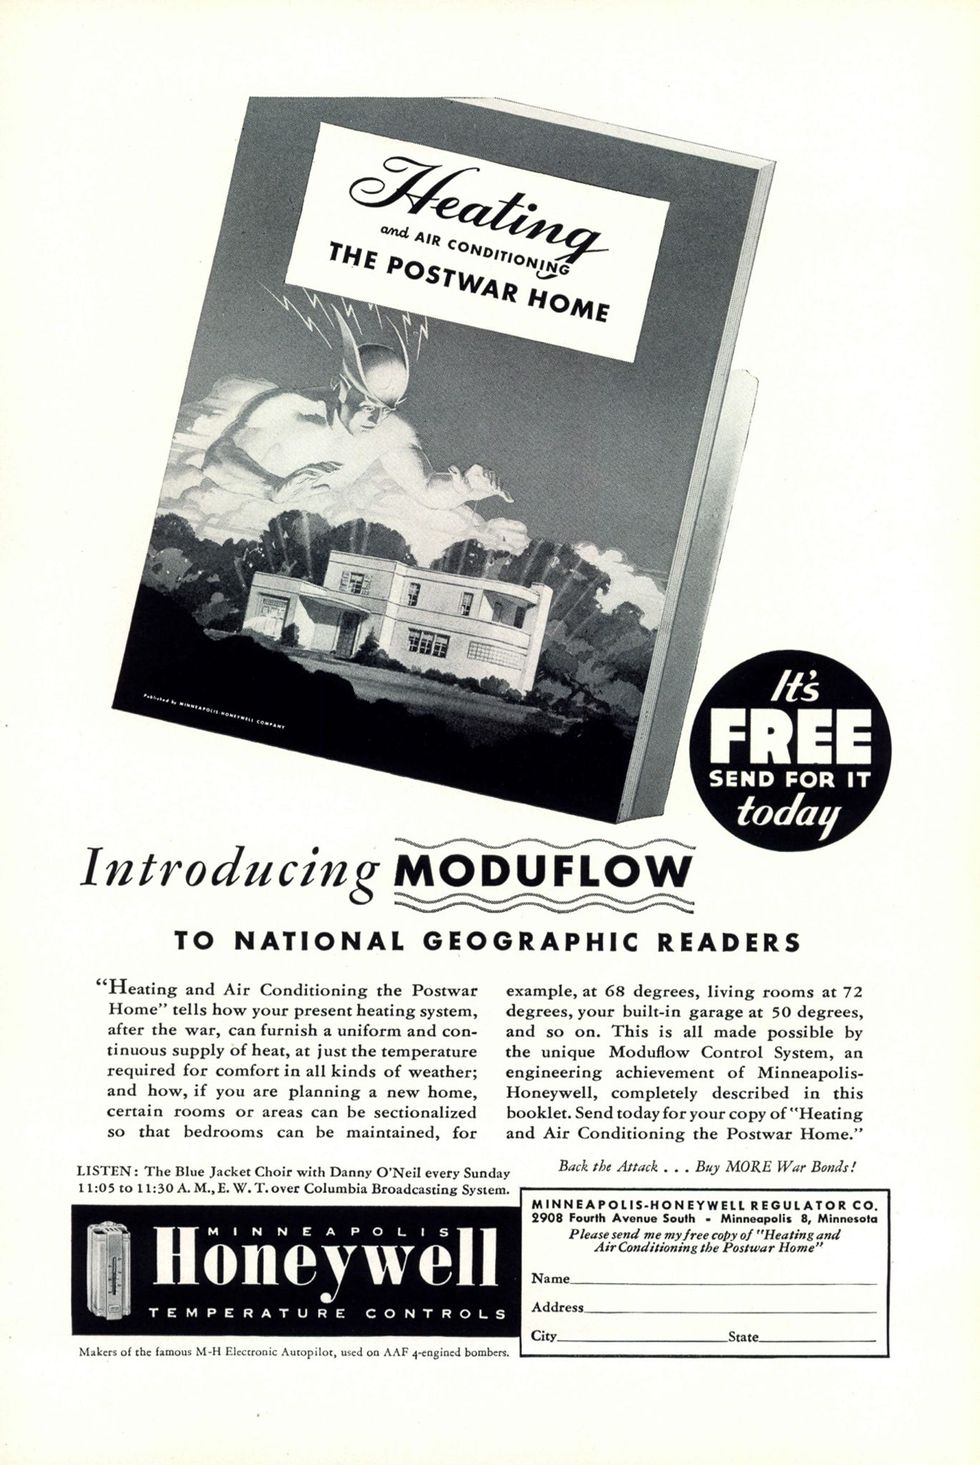 In deze advertentie in National Geographic uit september 1944 belooft het bedrijf Minneapolis Honeywell Temperature Controls huiseigenaren dat ze na de oorlog warmte en koelsystemen kunnen aanschaffen die zo uit een science fictionfilm lijken te komen